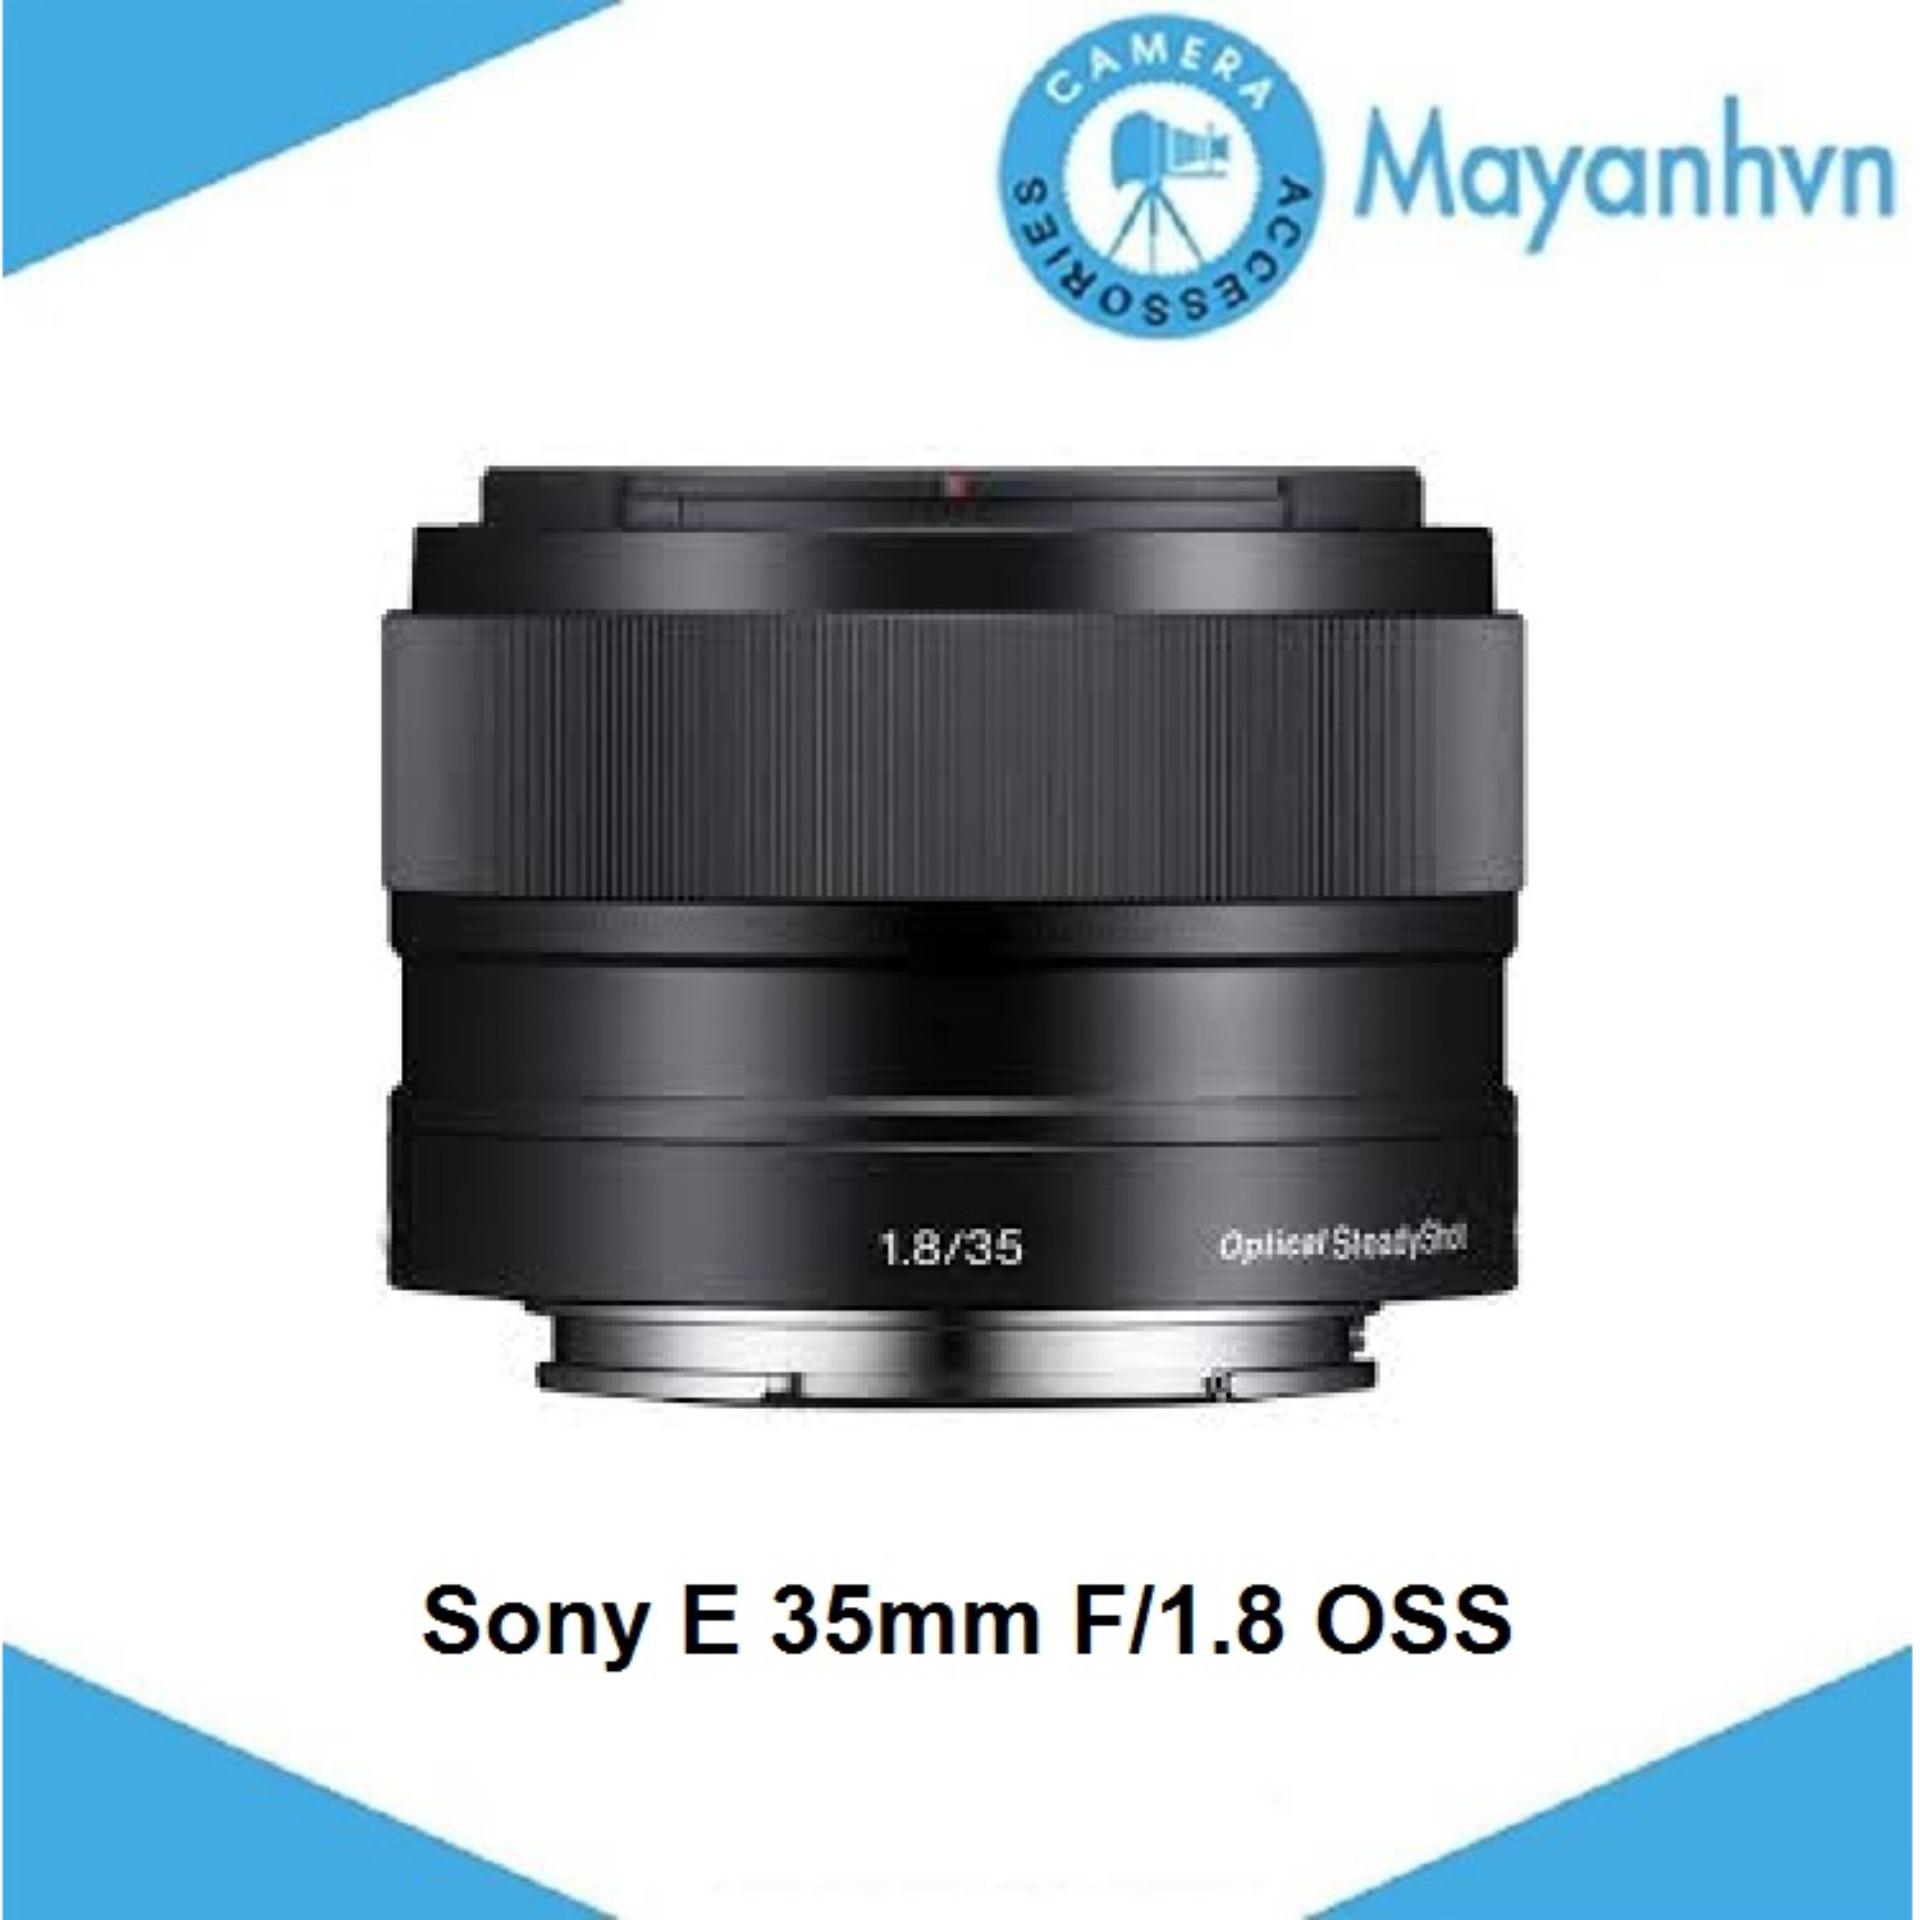 Ống kính Sony E 35mm F/1.8 OSS (Hàng chính hãng)